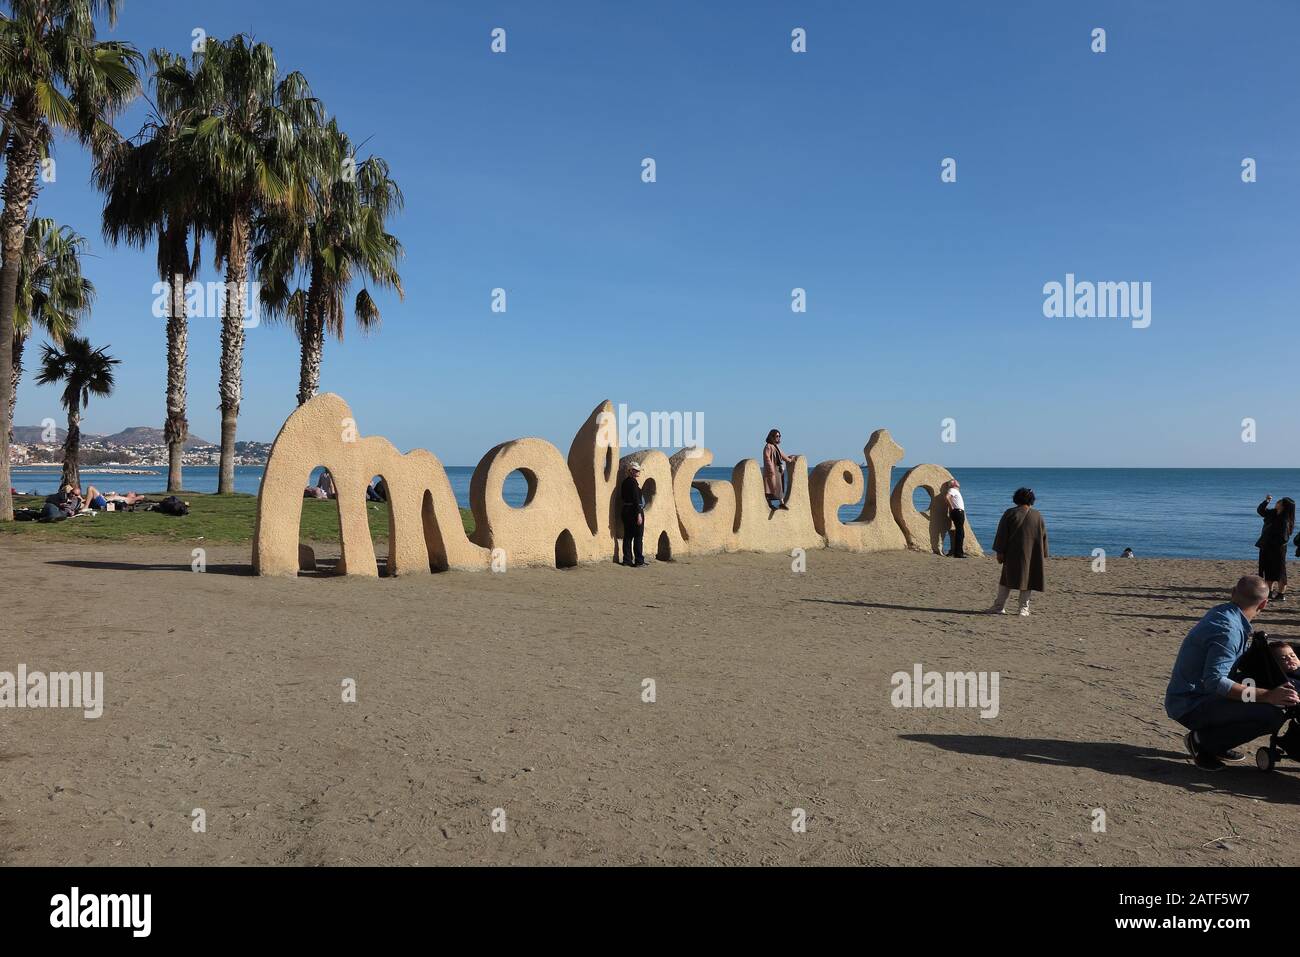 La Malagueta Beach at Paseo Marítimo Cdad. de Melilla, Malaga, Spain Stock Photo